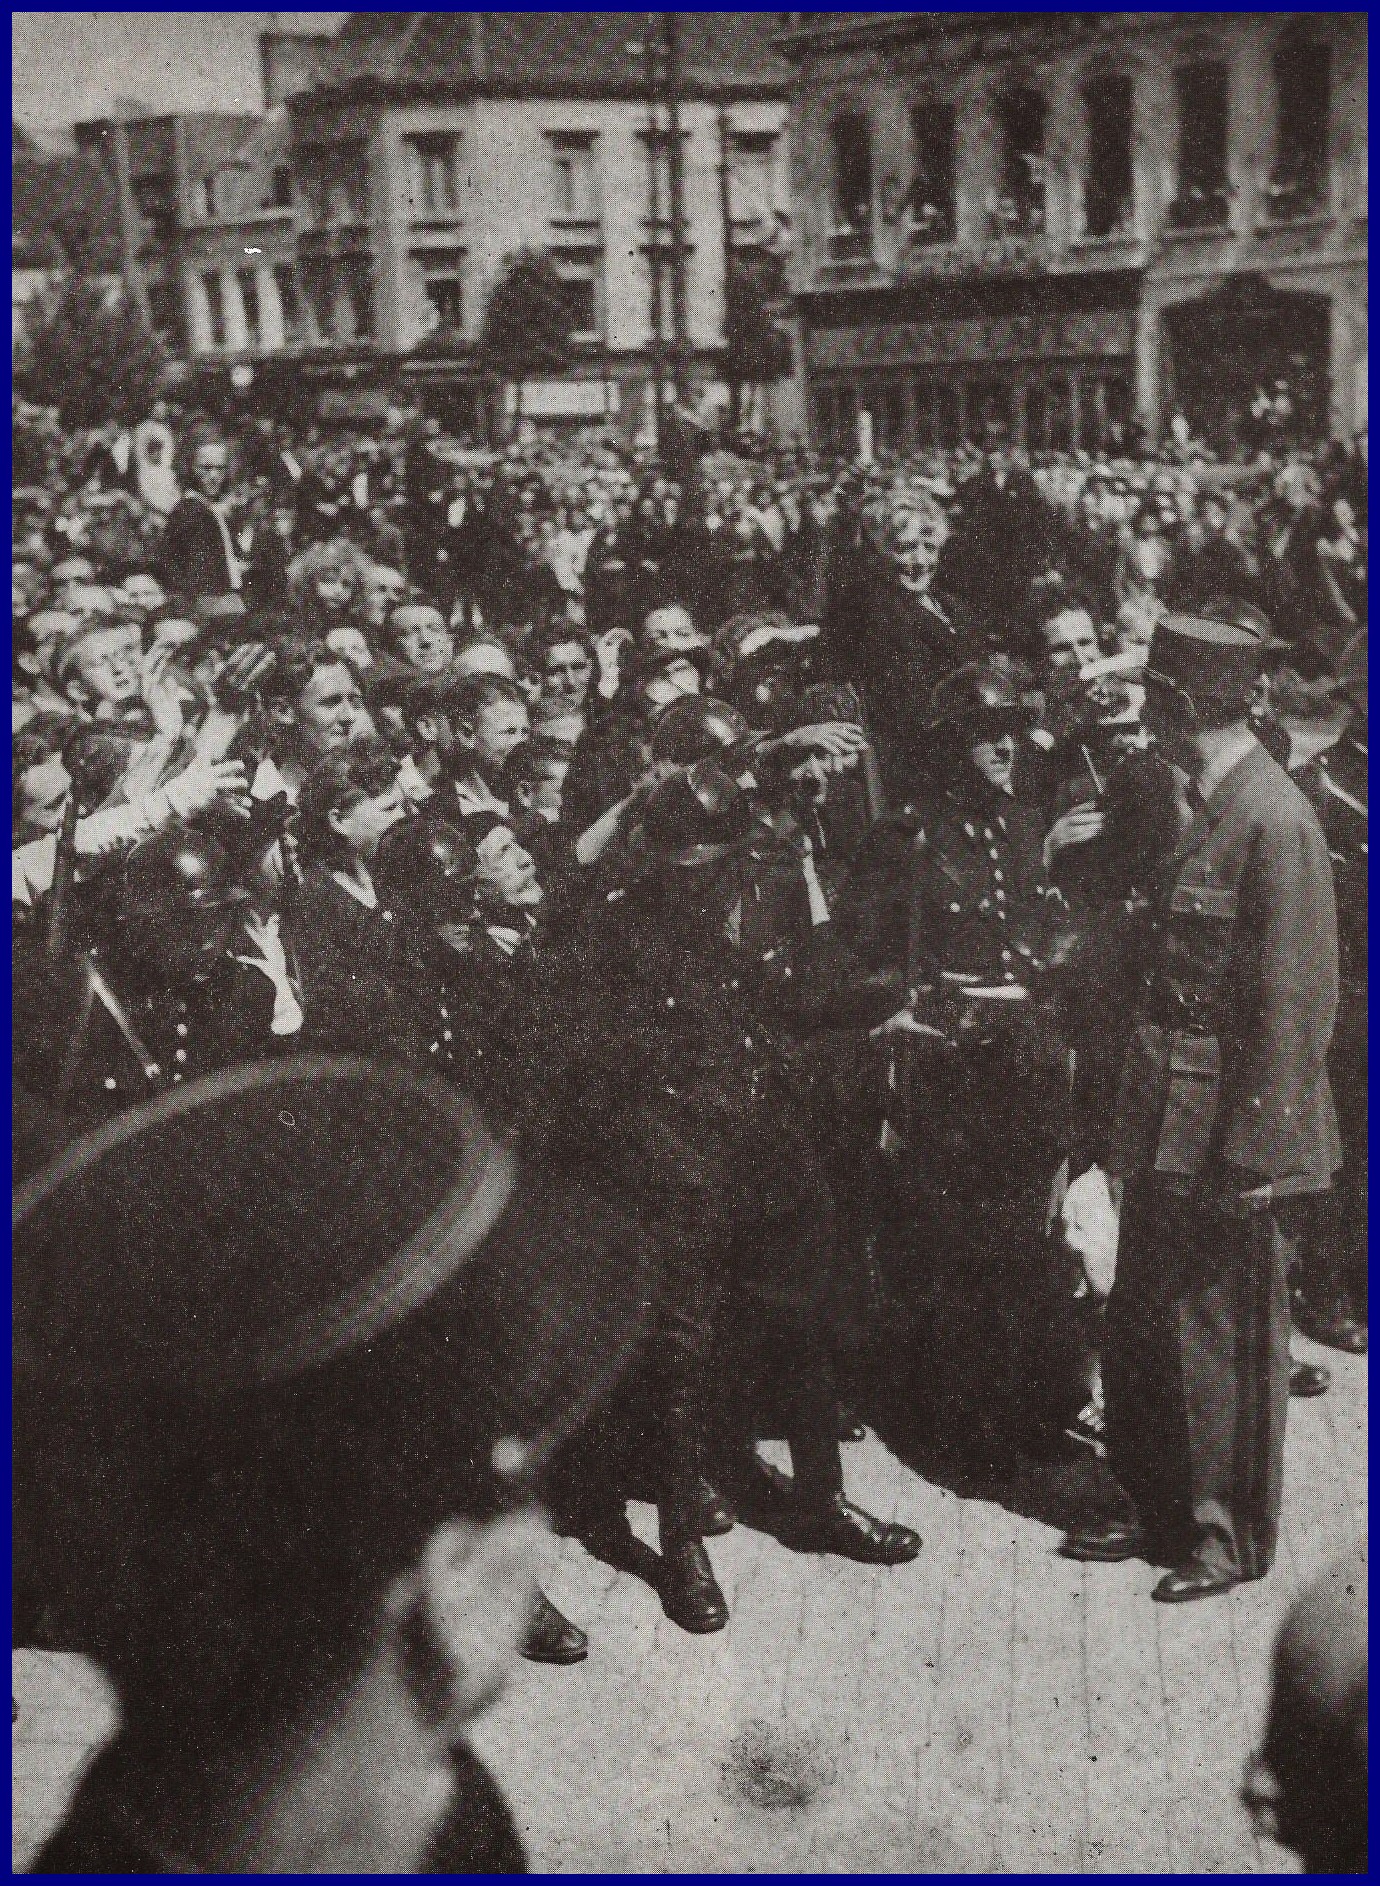 Calais visite du general de gaulle a calais en aout 1945 on reconnait mme sala en hauteur deboout sur une chaise encadre